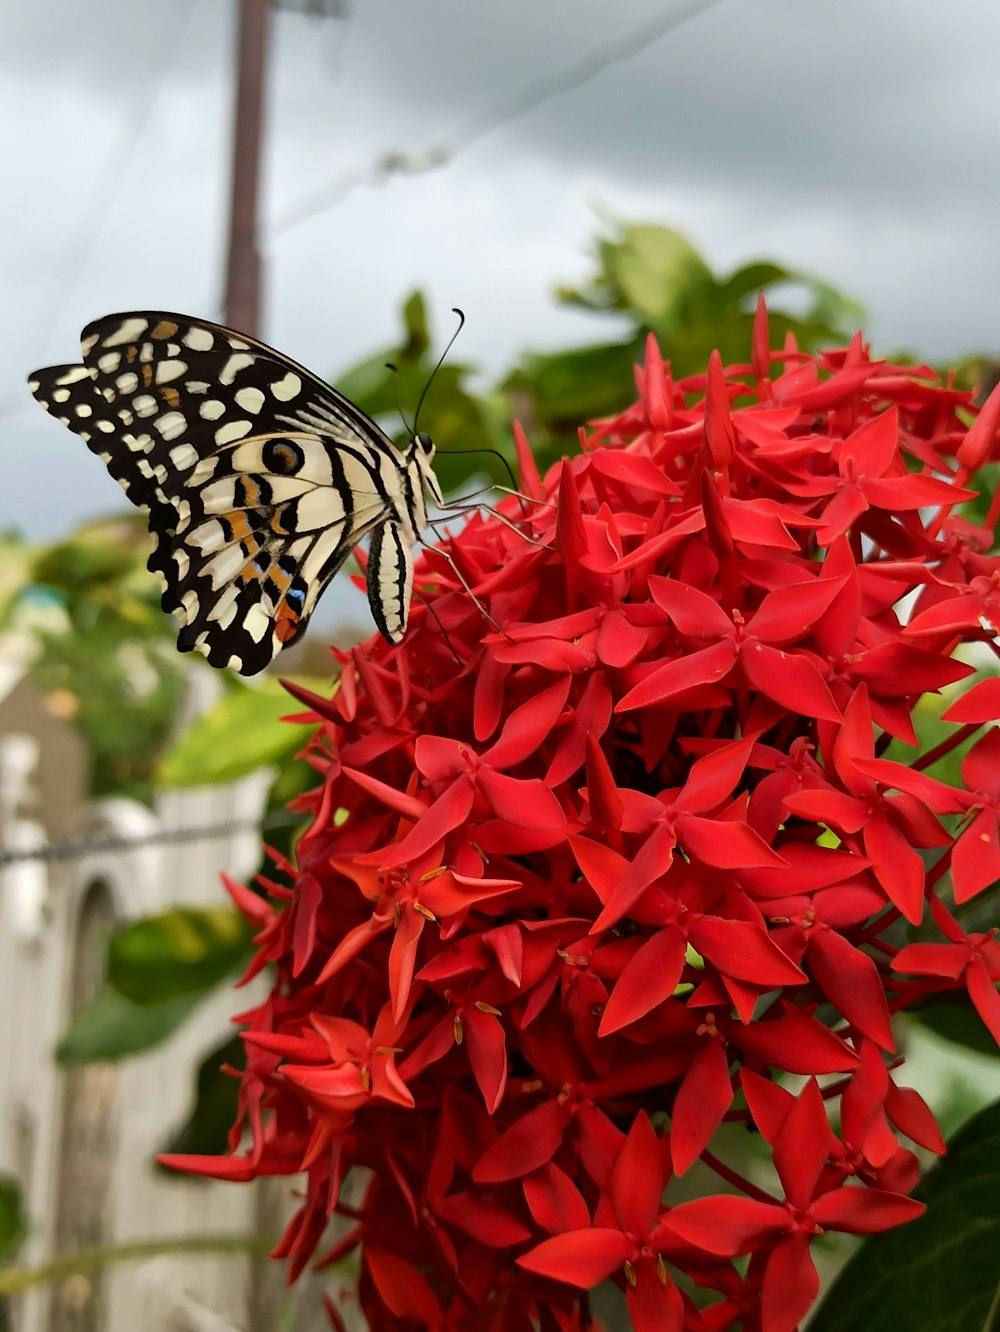 flores vermelhas com borboleta branca e preta no topo